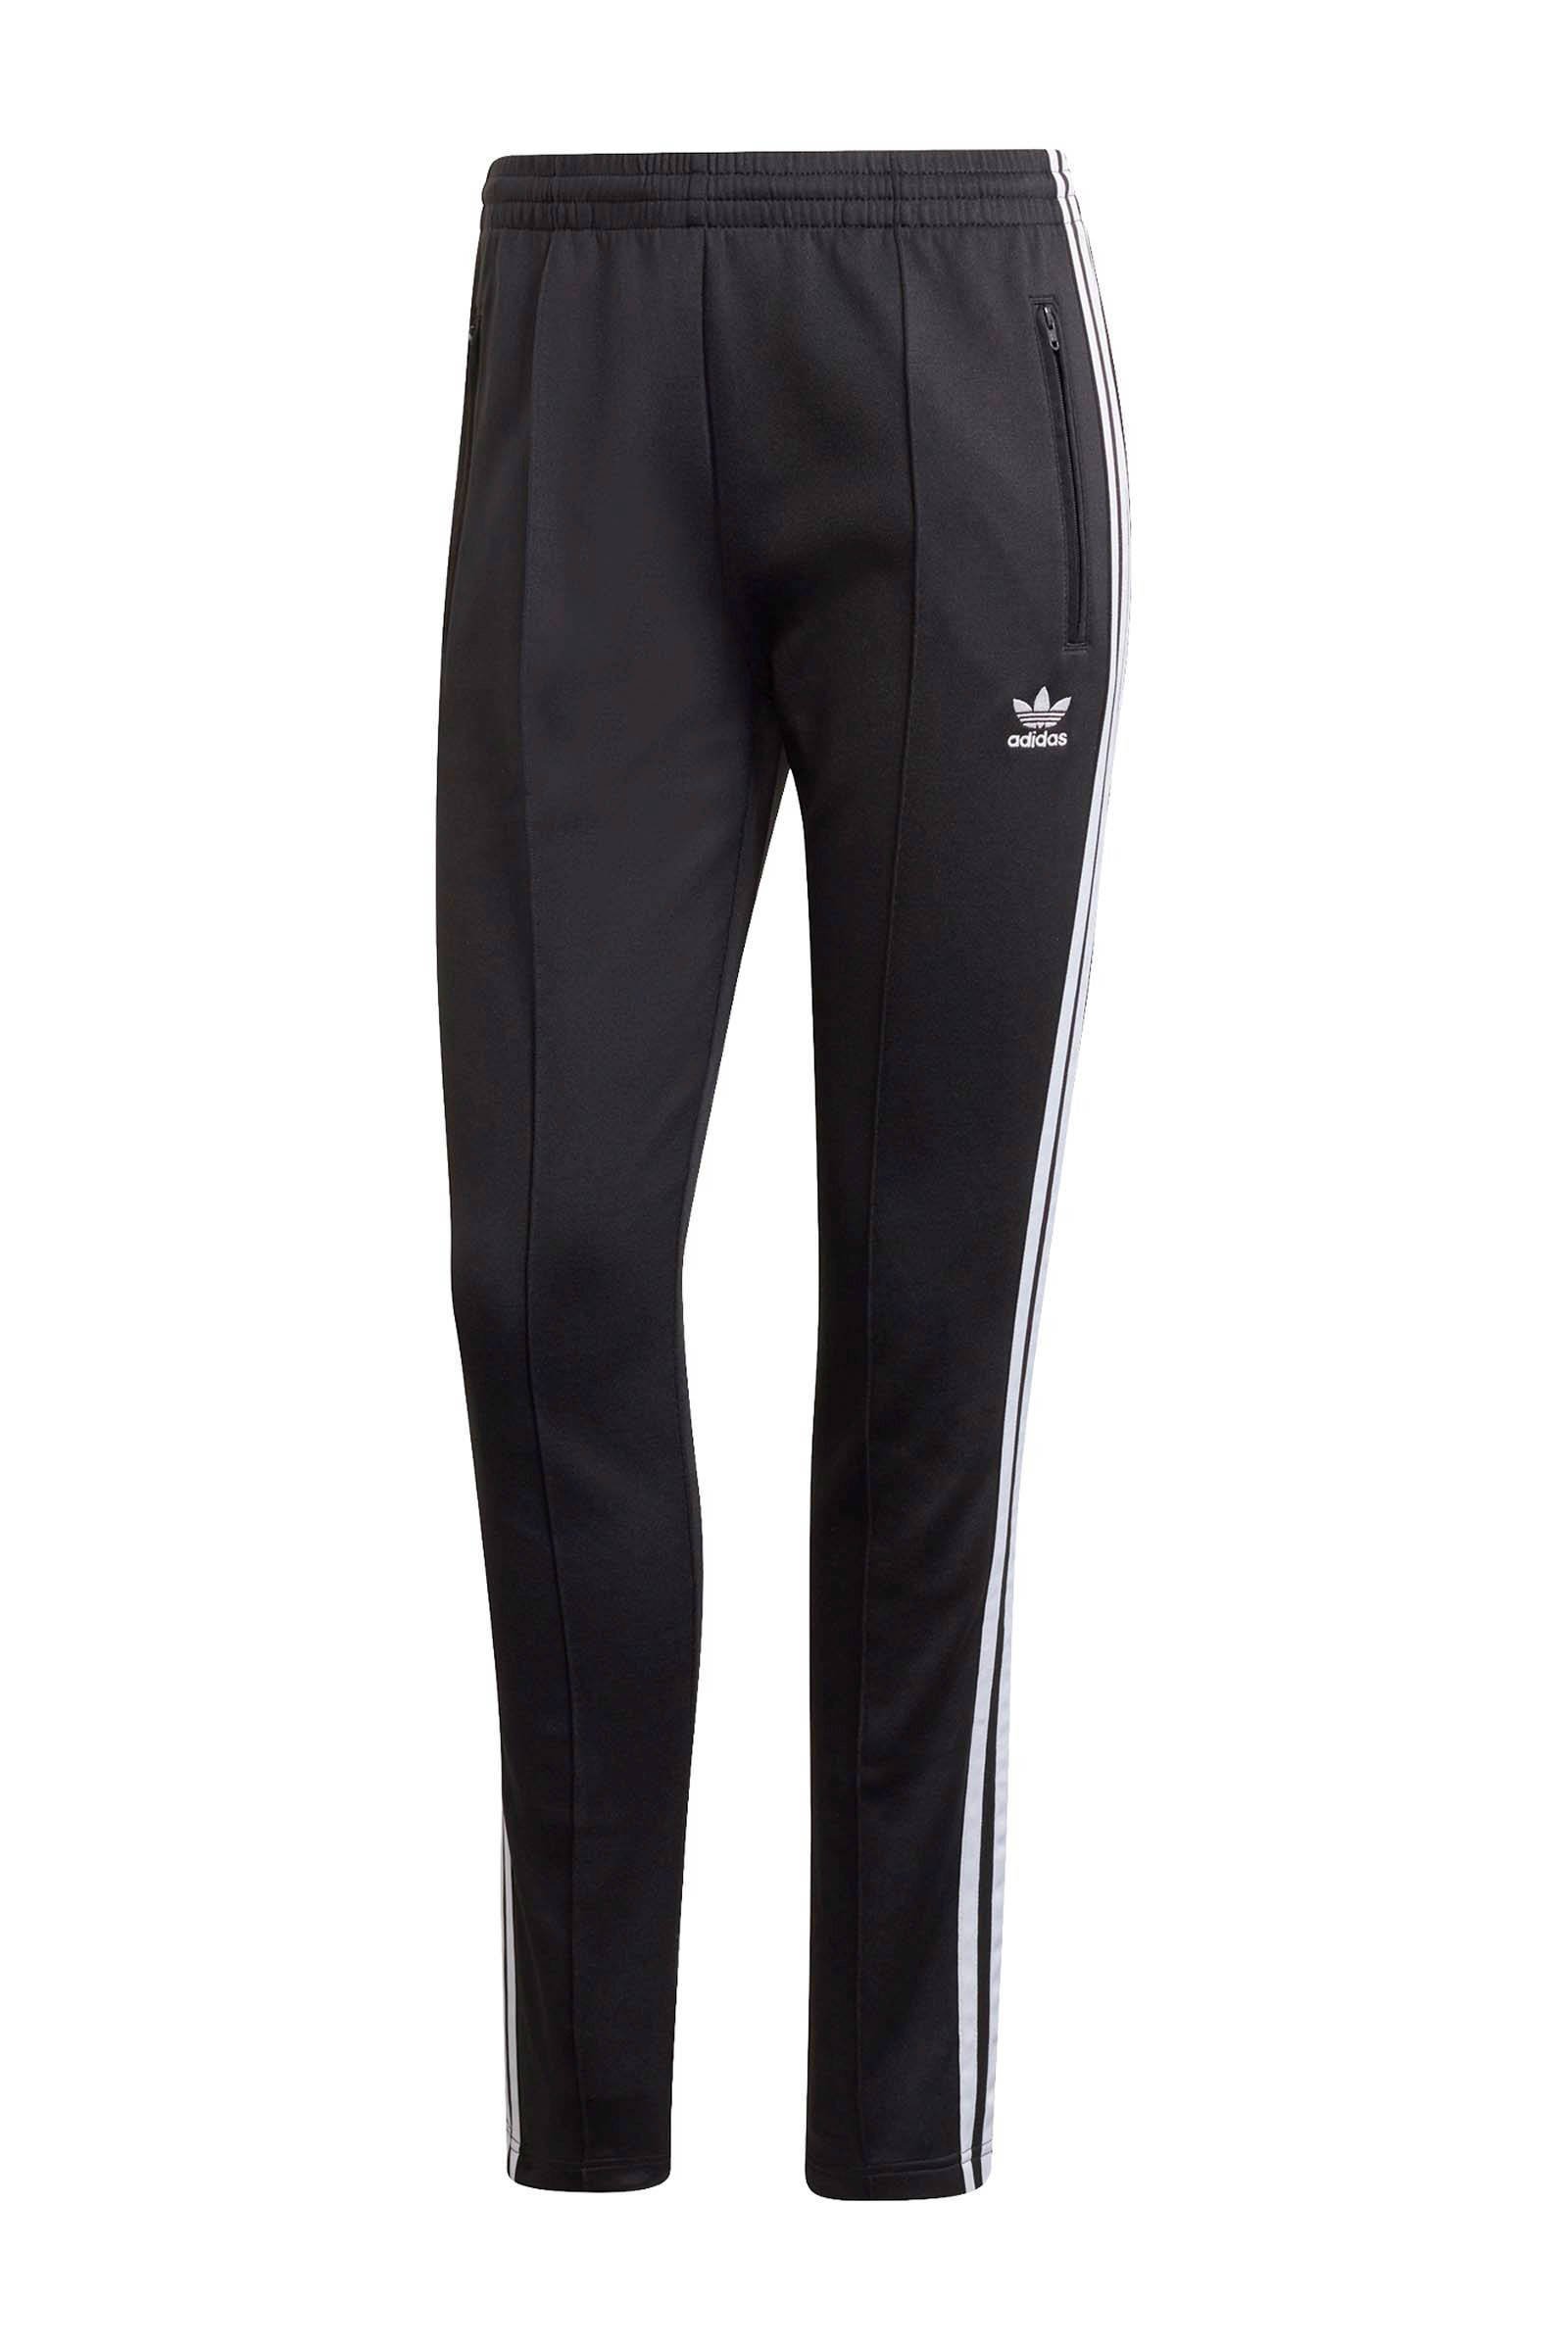 adidas Originals Superstar joggingbroek zwart/wit | wehkamp